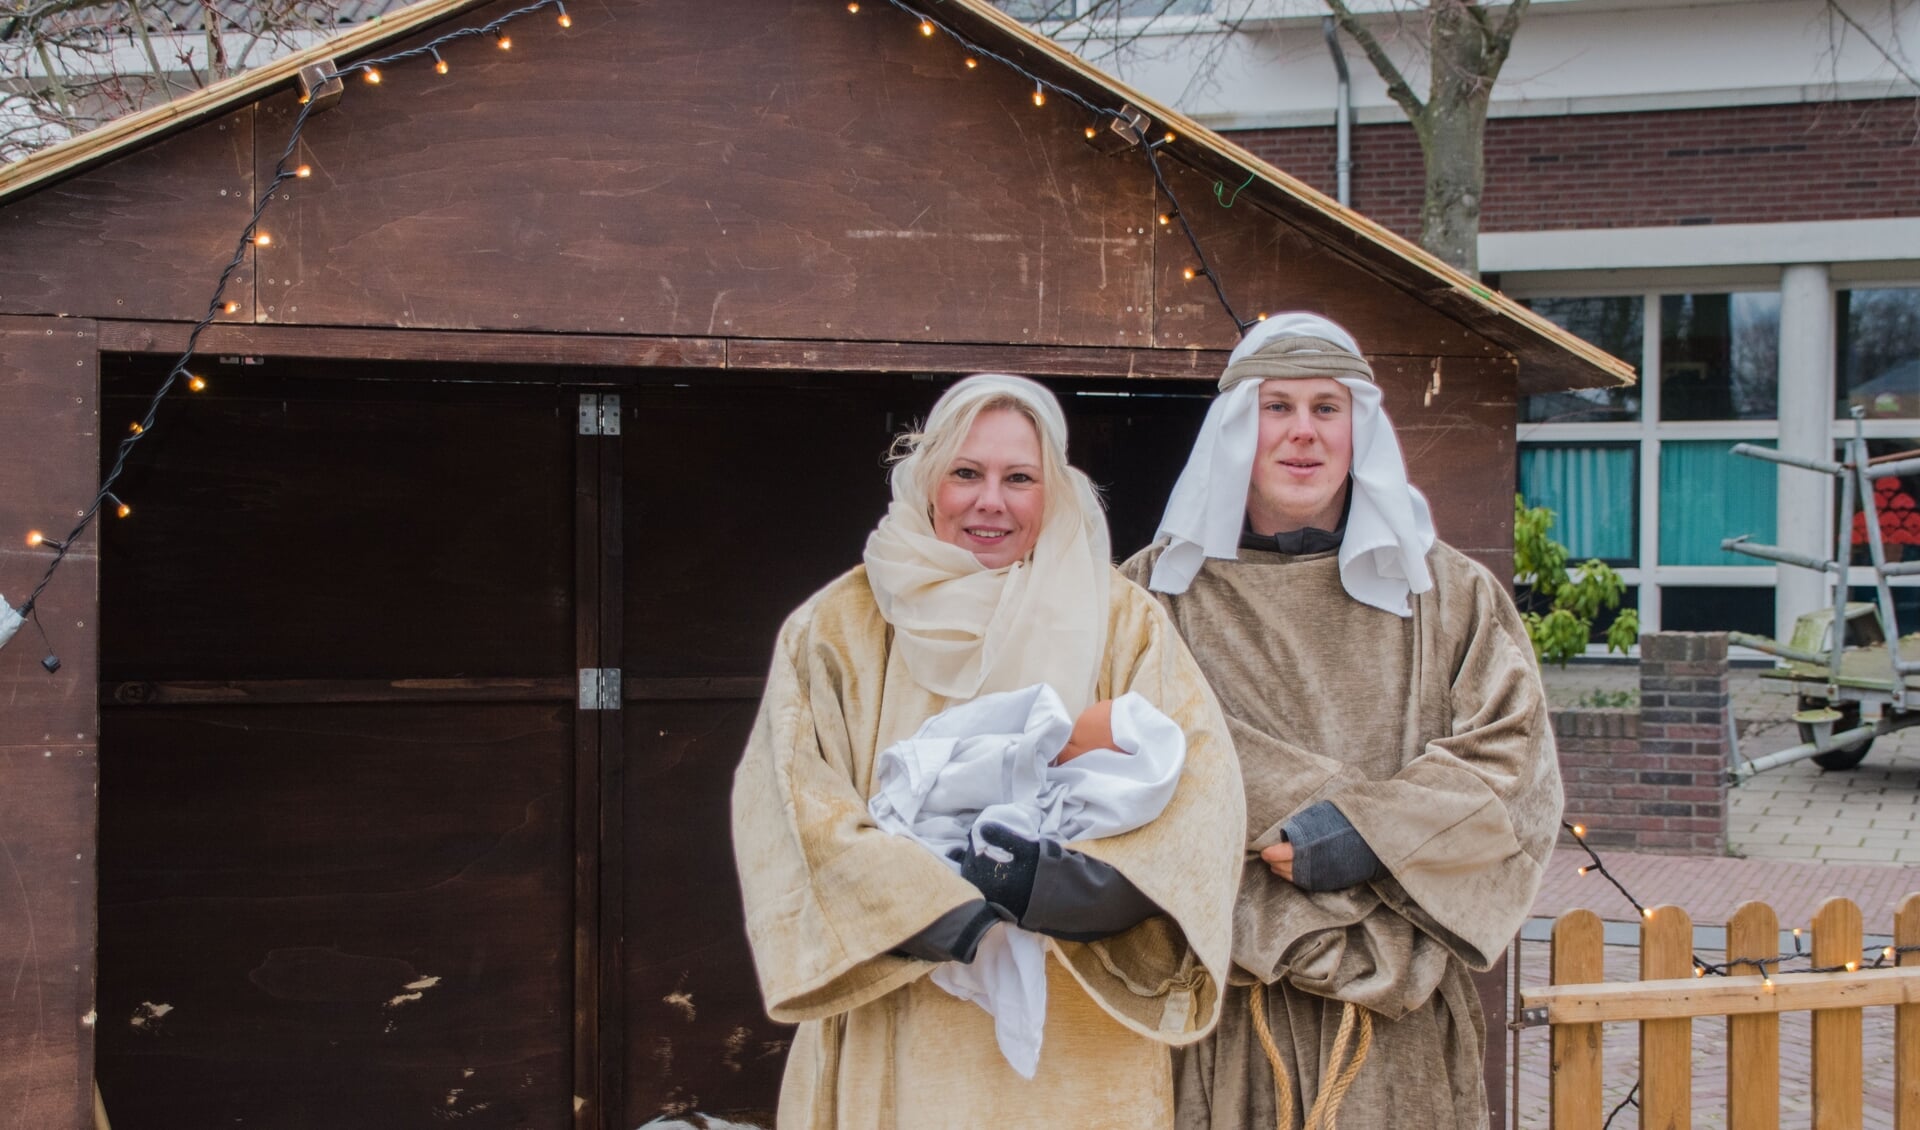 Jozef en Maria staan op menig kerstmarkt in het land, maar komen zelden een sfeervollere als die in Vorden tegen. Foto: Achterhoekfoto.nl/Jasper Blaauw